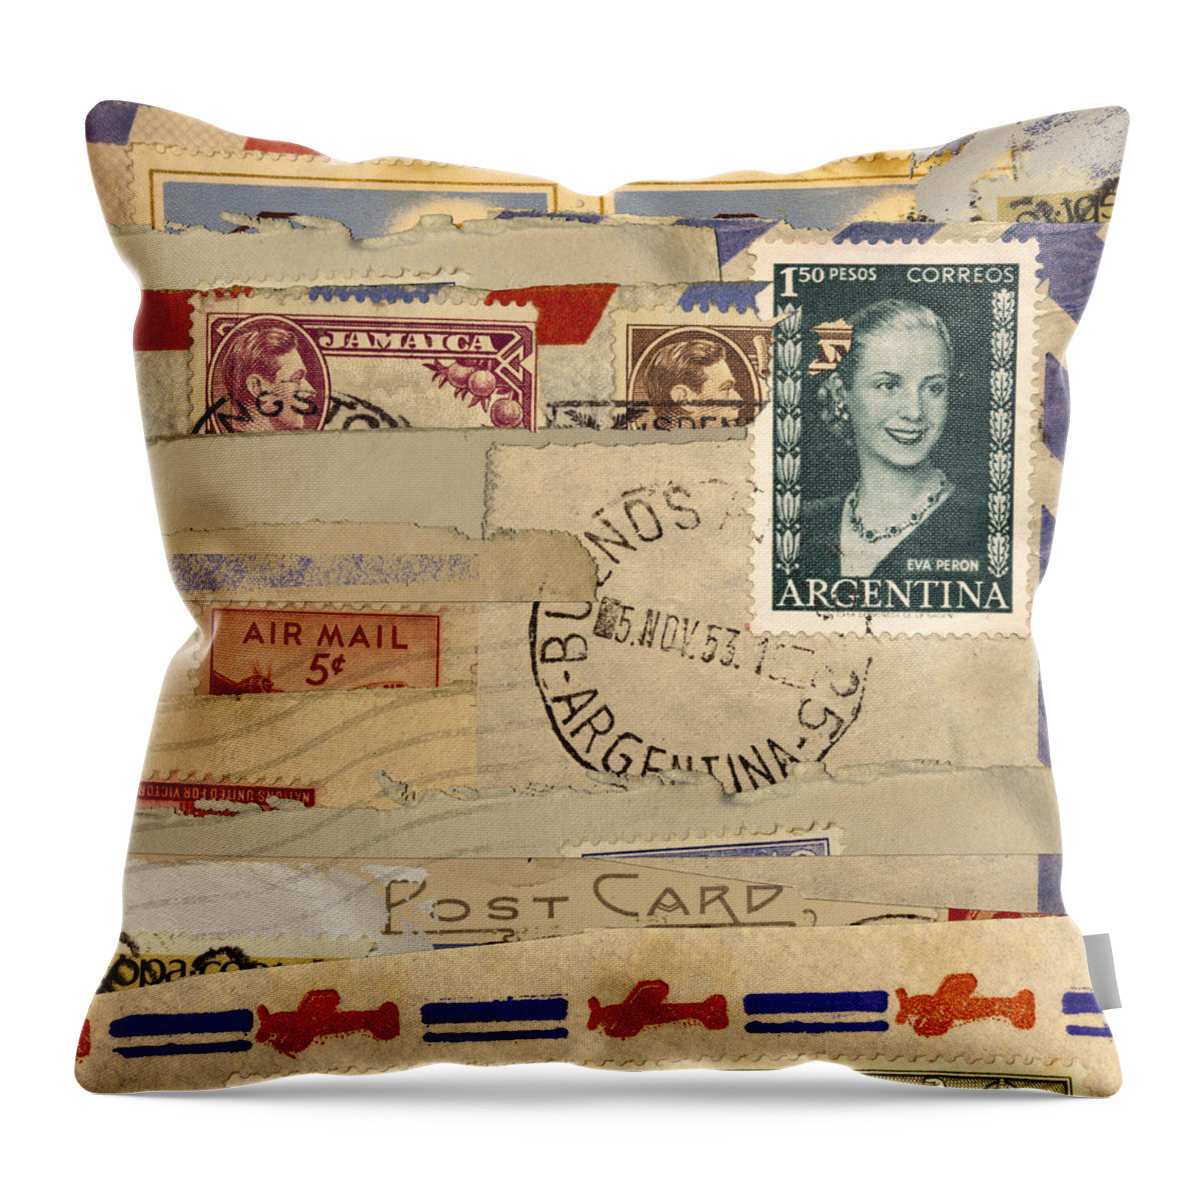 Eva Peron Throw Pillow featuring the photograph Mail Collage Eva Peron by Carol Leigh